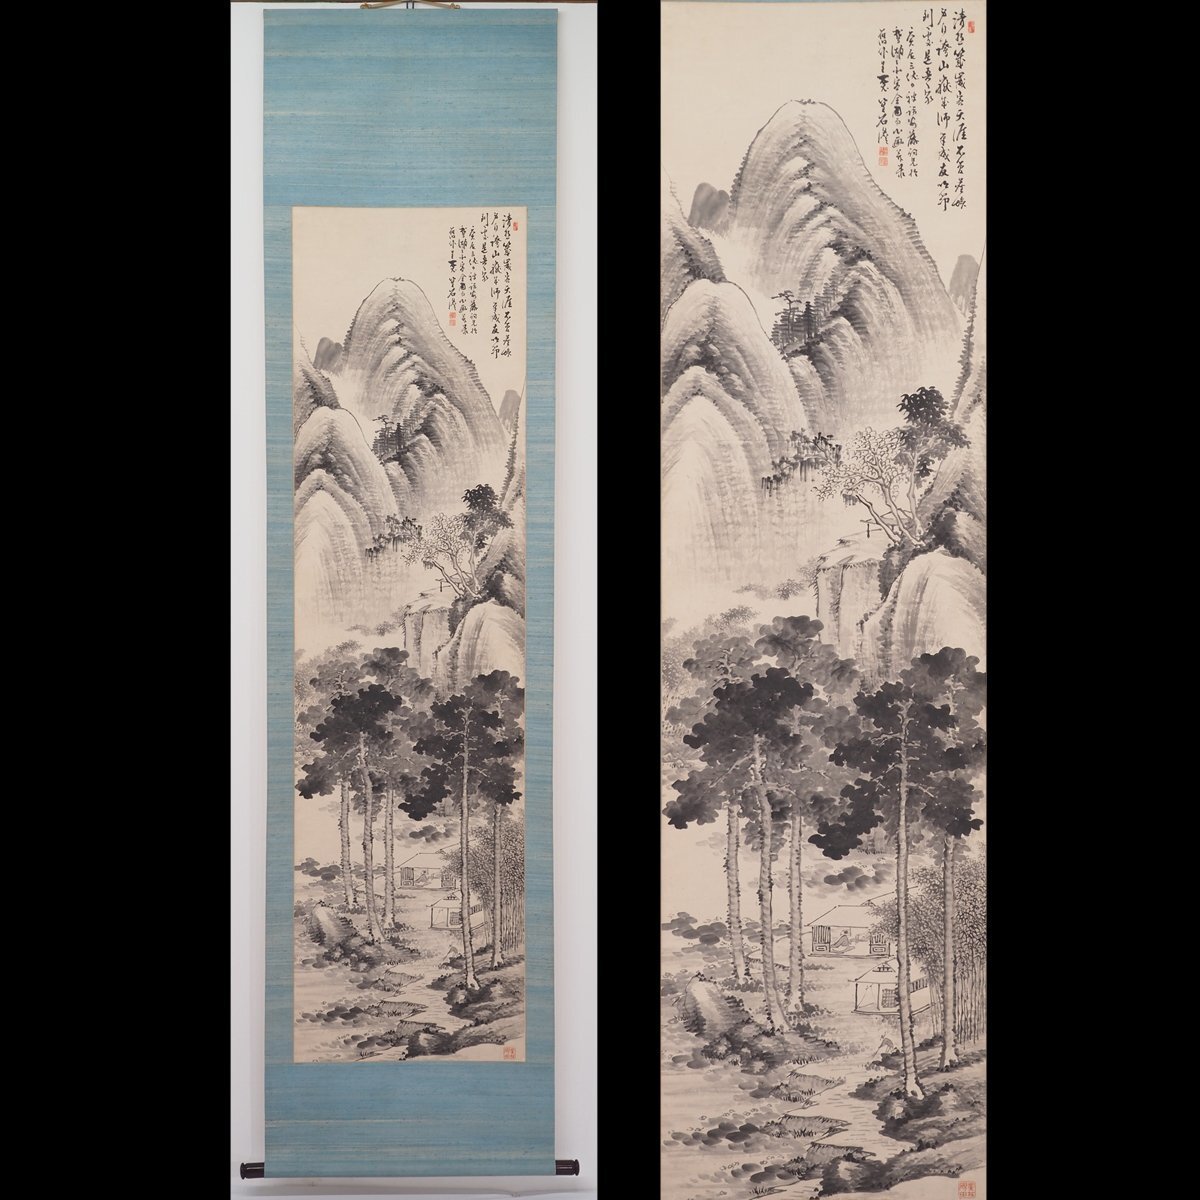 [प्रामाणिक] [वातरिकनन] [सासाफू कोसेकी] 8803 लटकता हुआ स्क्रॉल जापानी पेंटिंग कोसेकीबेई साइलेंट लैंडस्केप कोमुरा डबल बॉक्स कुमामोटो हिगो मास्टर फुकुदा ताइका सैतो कियान अंकित, चित्रकारी, जापानी चित्रकला, परिदृश्य, हवा और चाँद